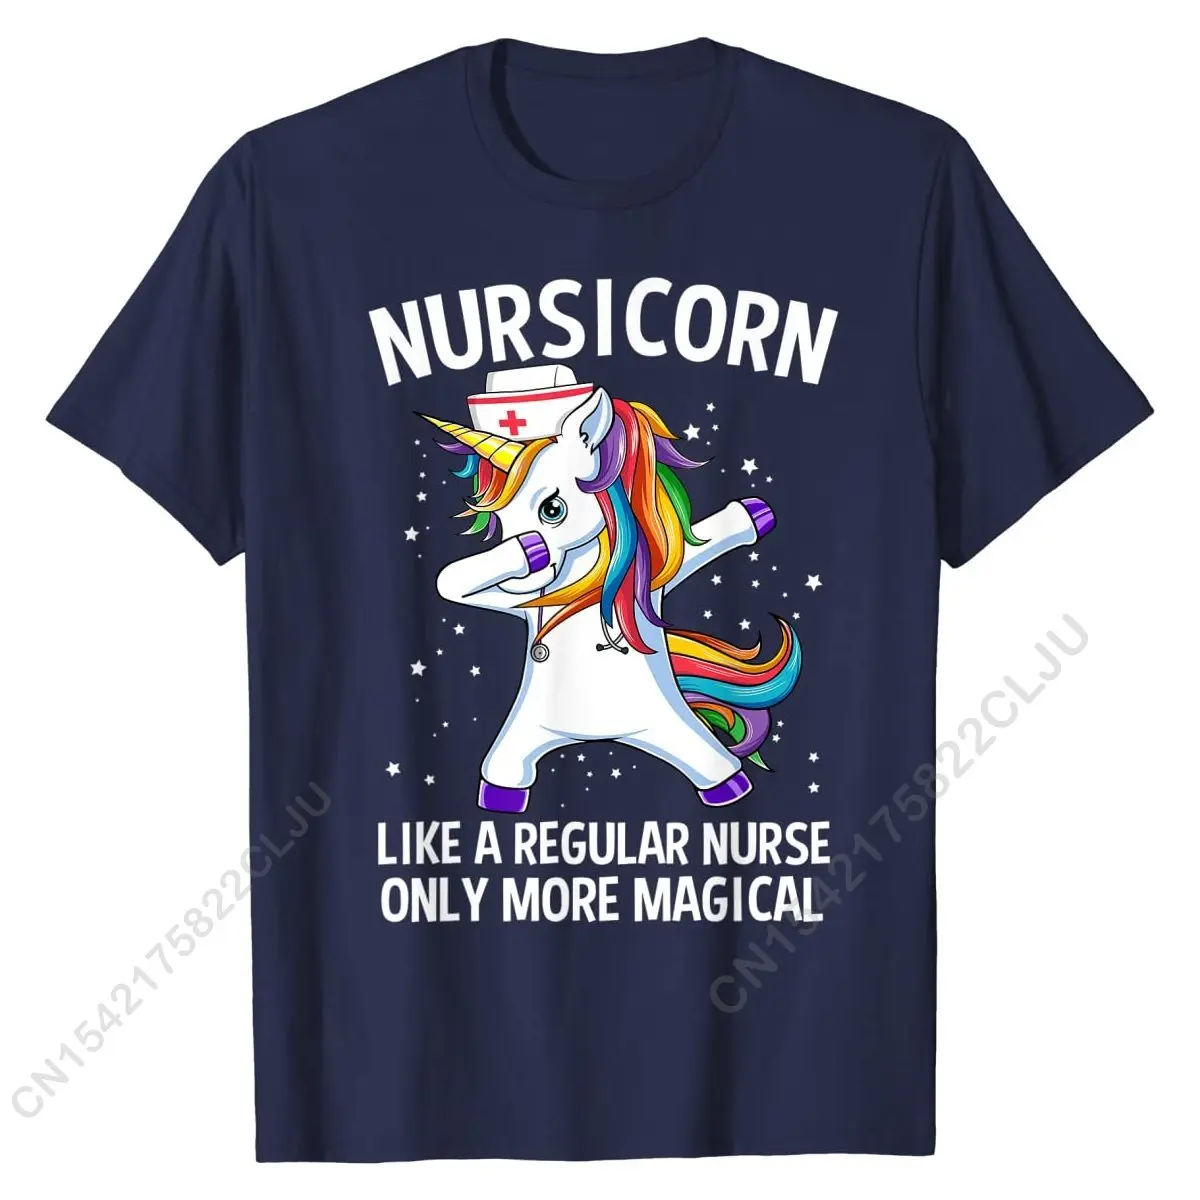 Вытирающий Единорог Nursicorn, Забавная футболка медсестры, футболки, Повседневные хлопковые мужские футболки, дизайн - 3